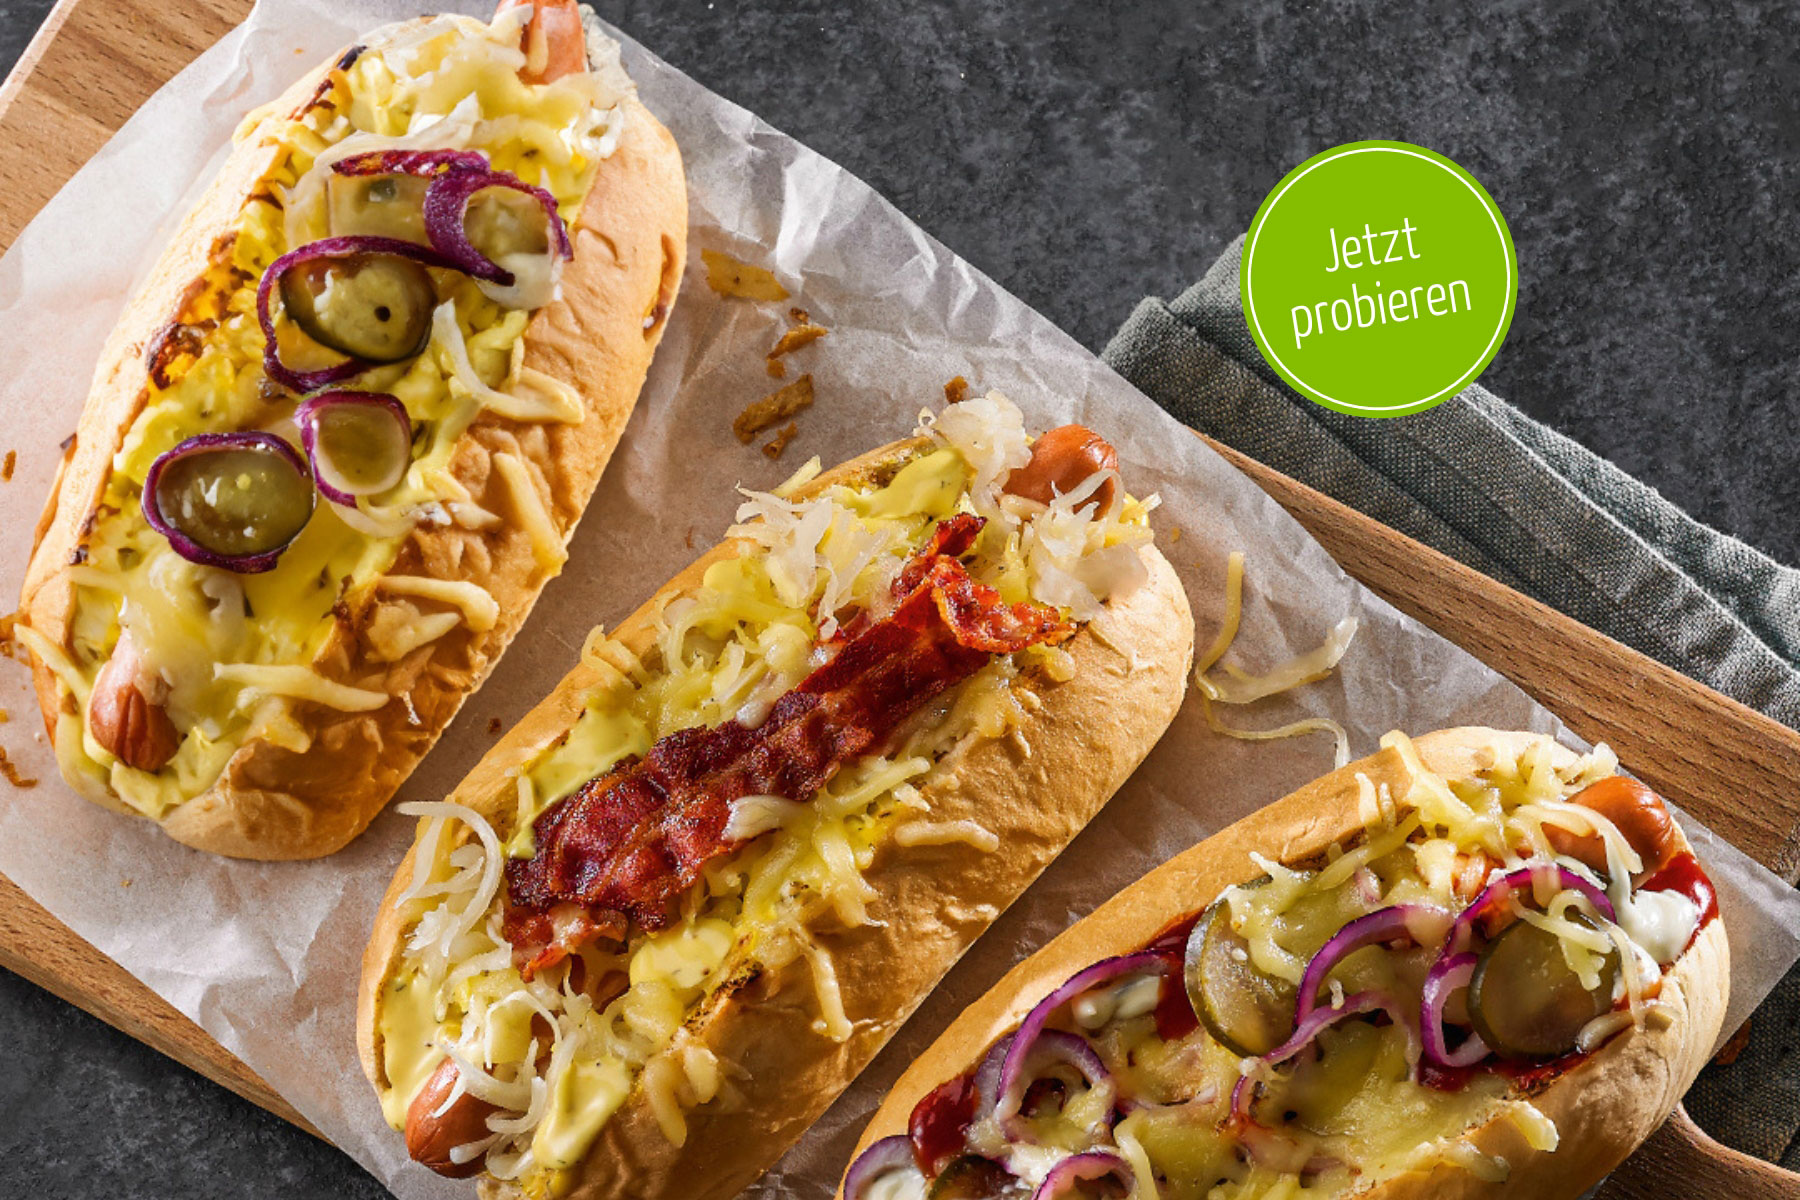 HEISSHUNGER?: Gönn dir unsere Hot Dogs – erhältlich in den Varianten Classic oder Bacon.  